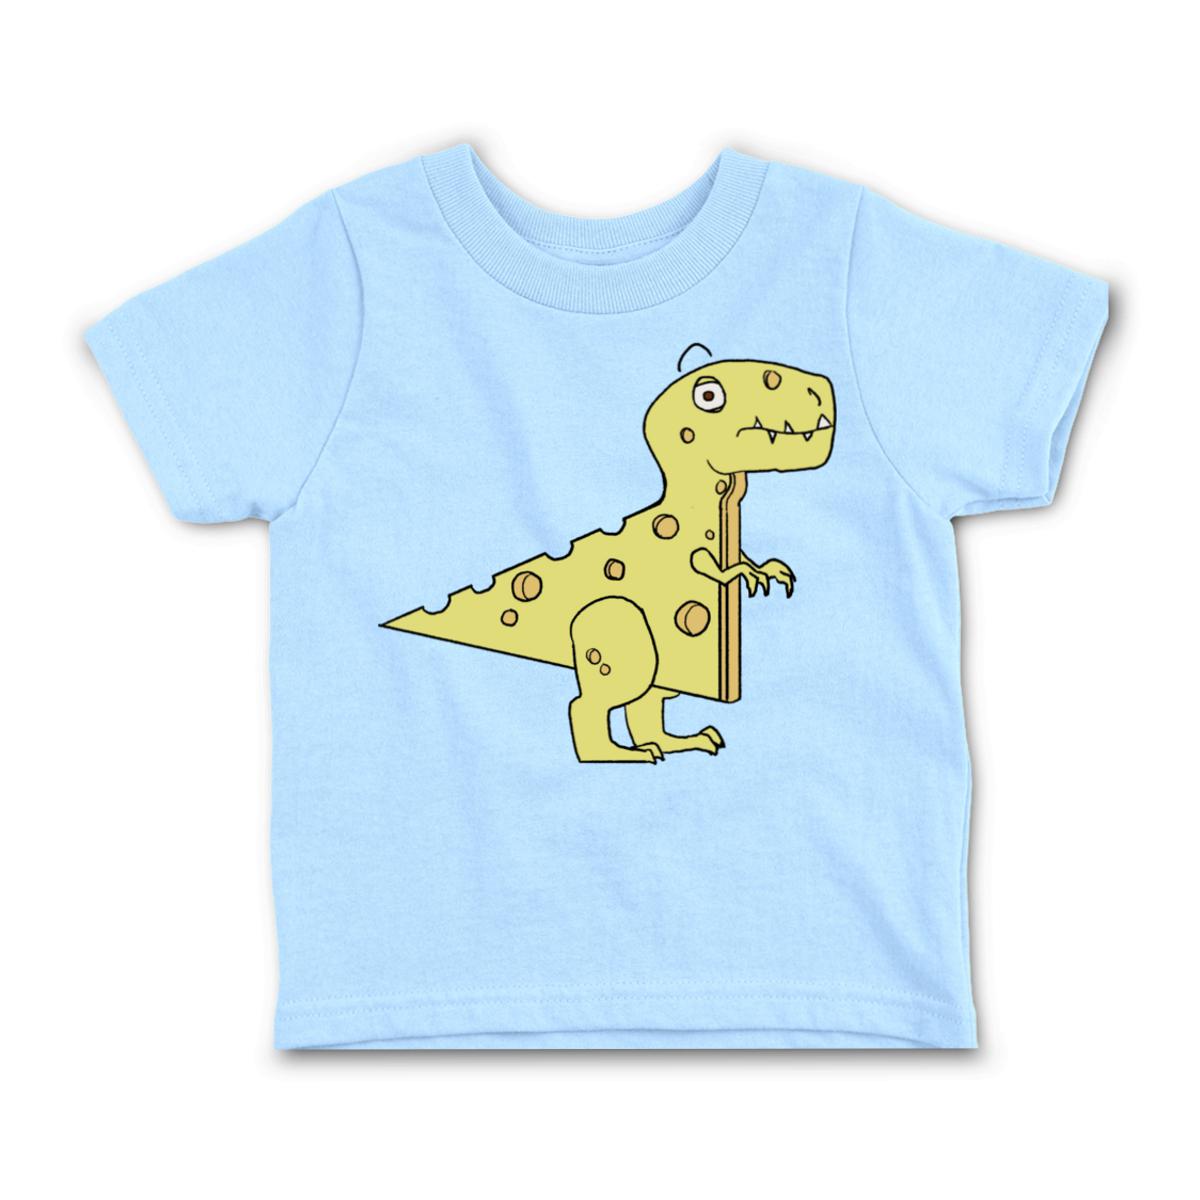 Cheeseosaurus Rex Toddler Tee 2T light-blue